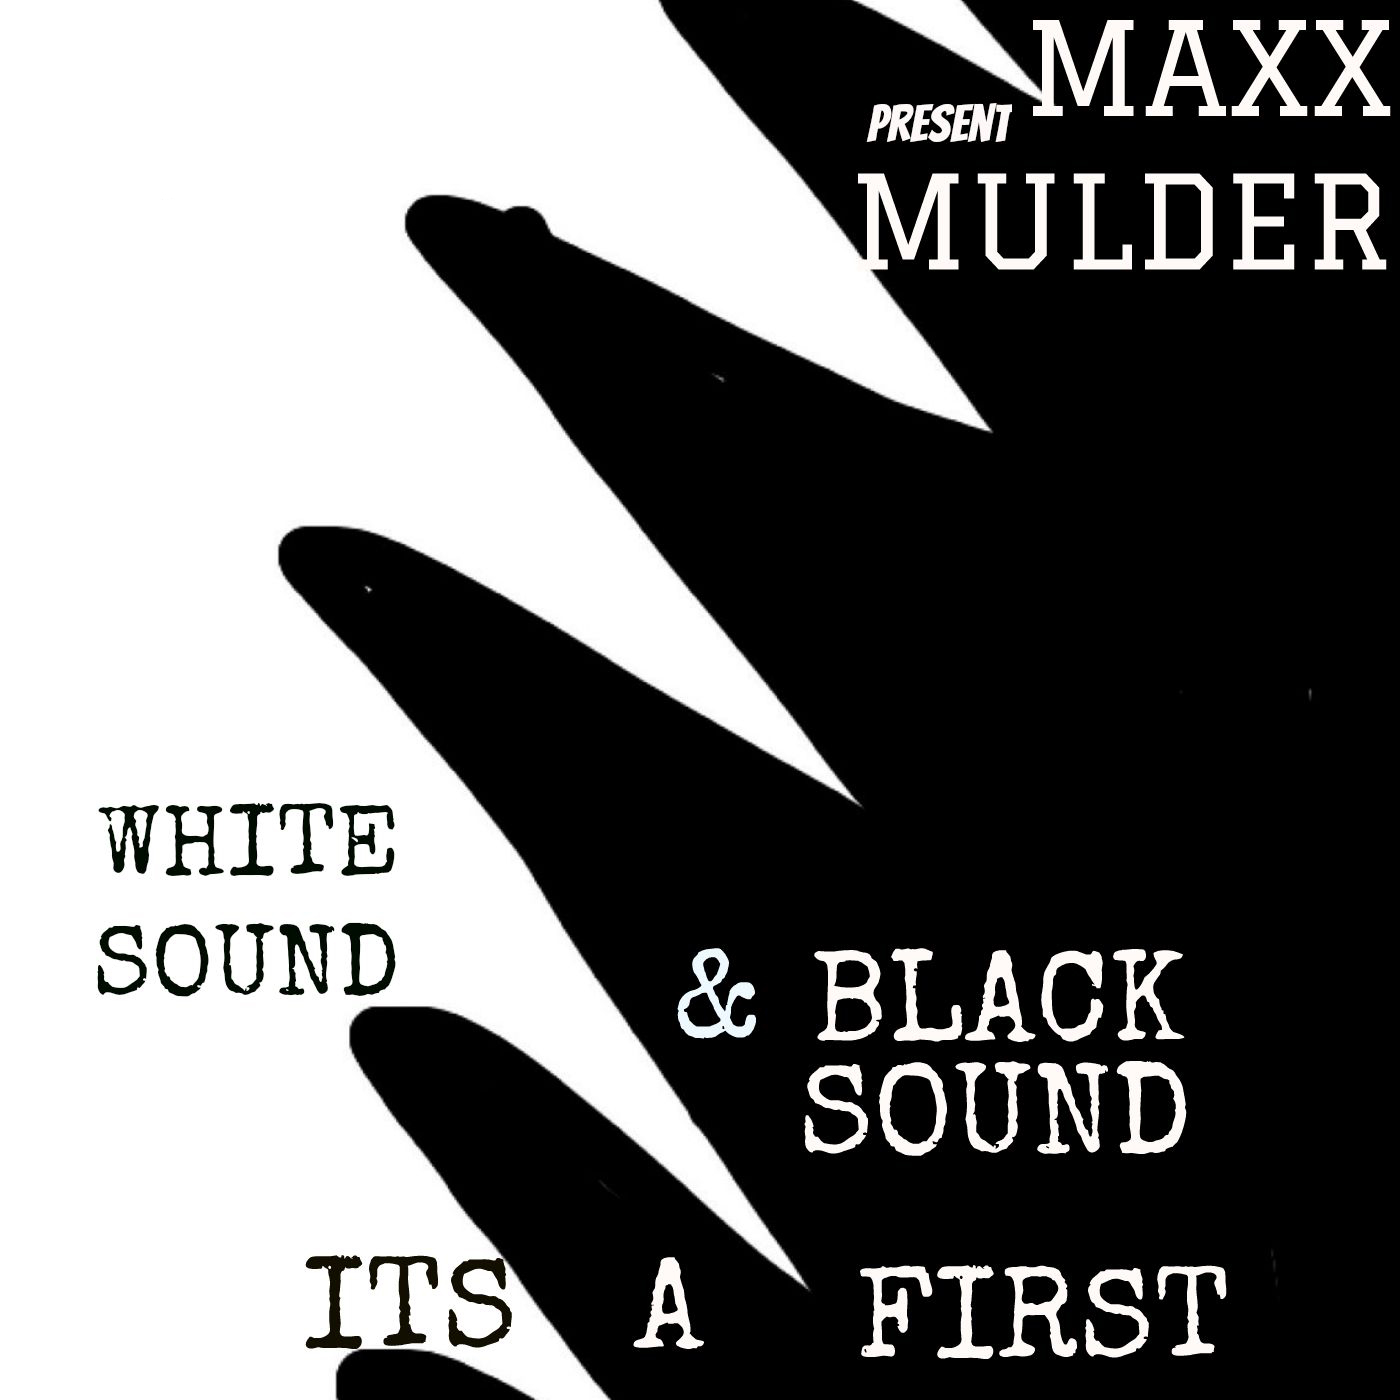 White Sound. Black Sound. SOUDLIFT Wonder (Original Mix). Fizz Sound. Wait sound